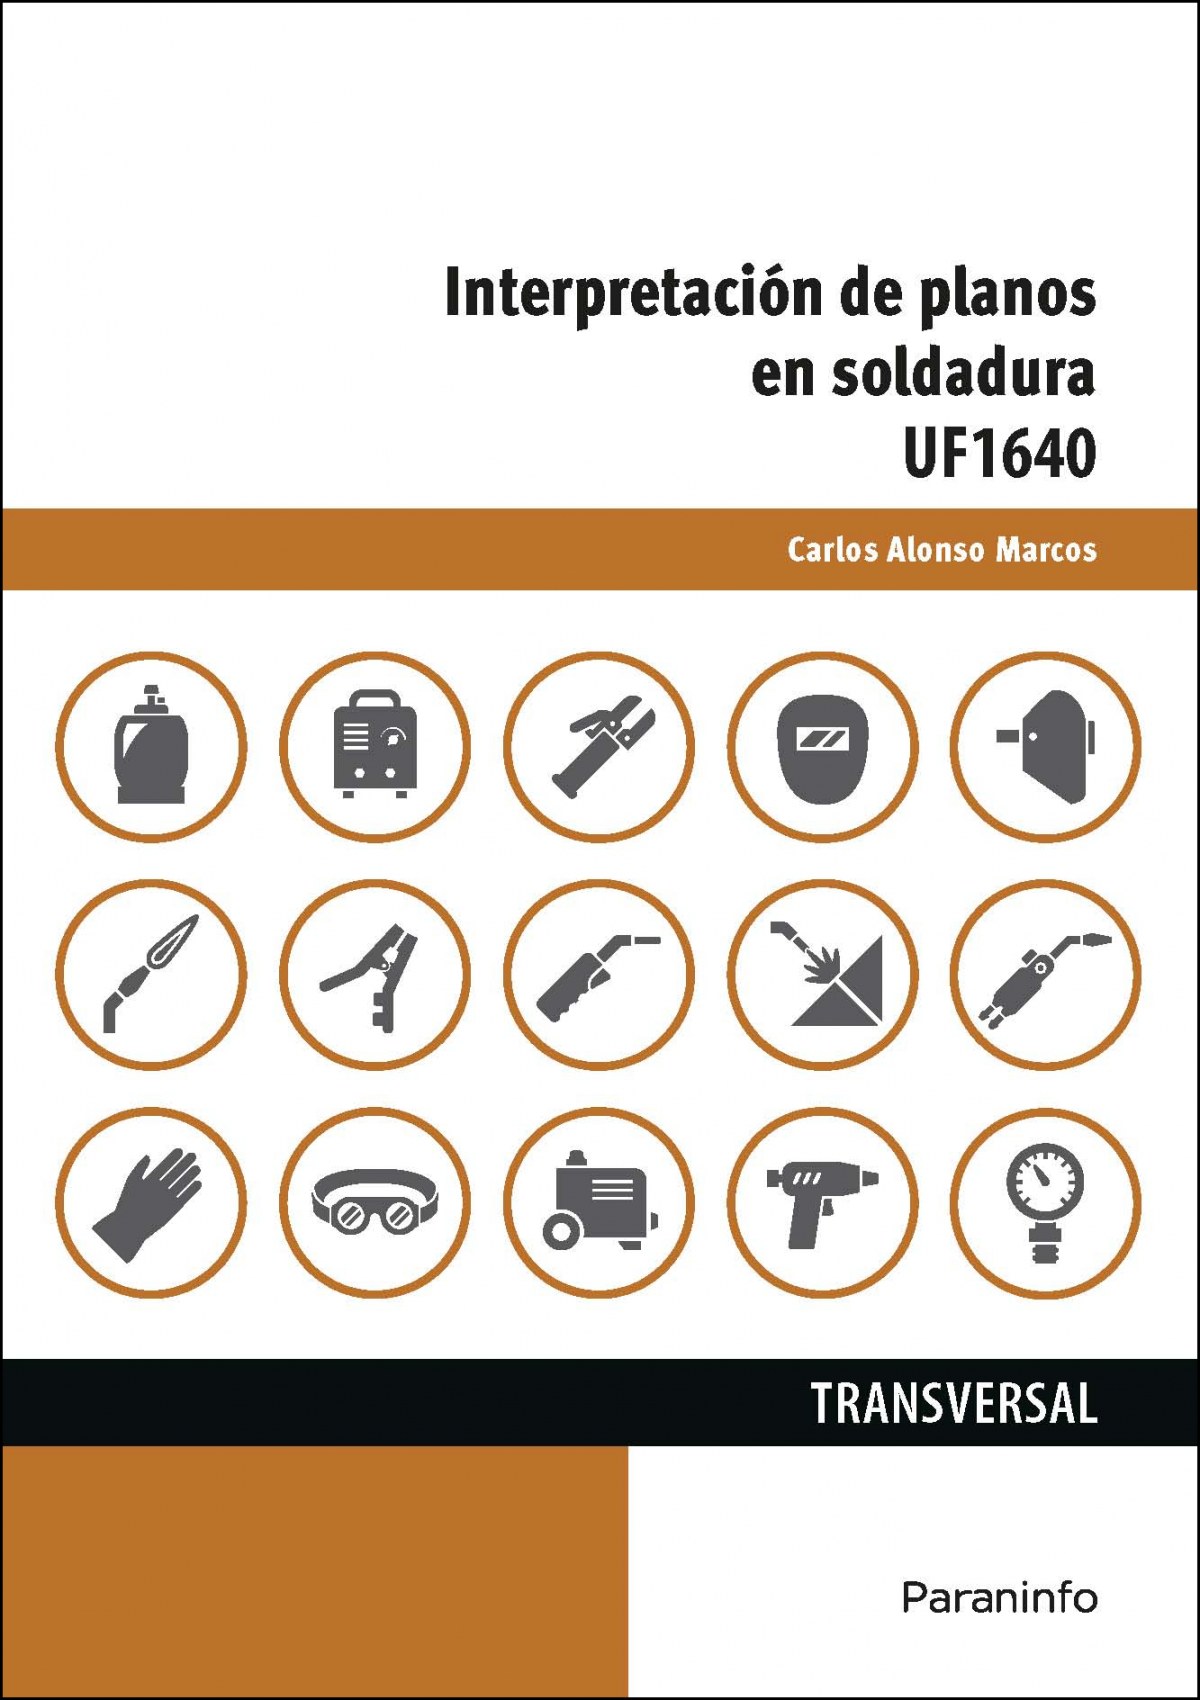 InterpretaciÓn de planos de soldadura uf1640 - Alonso Marcos, Carlos